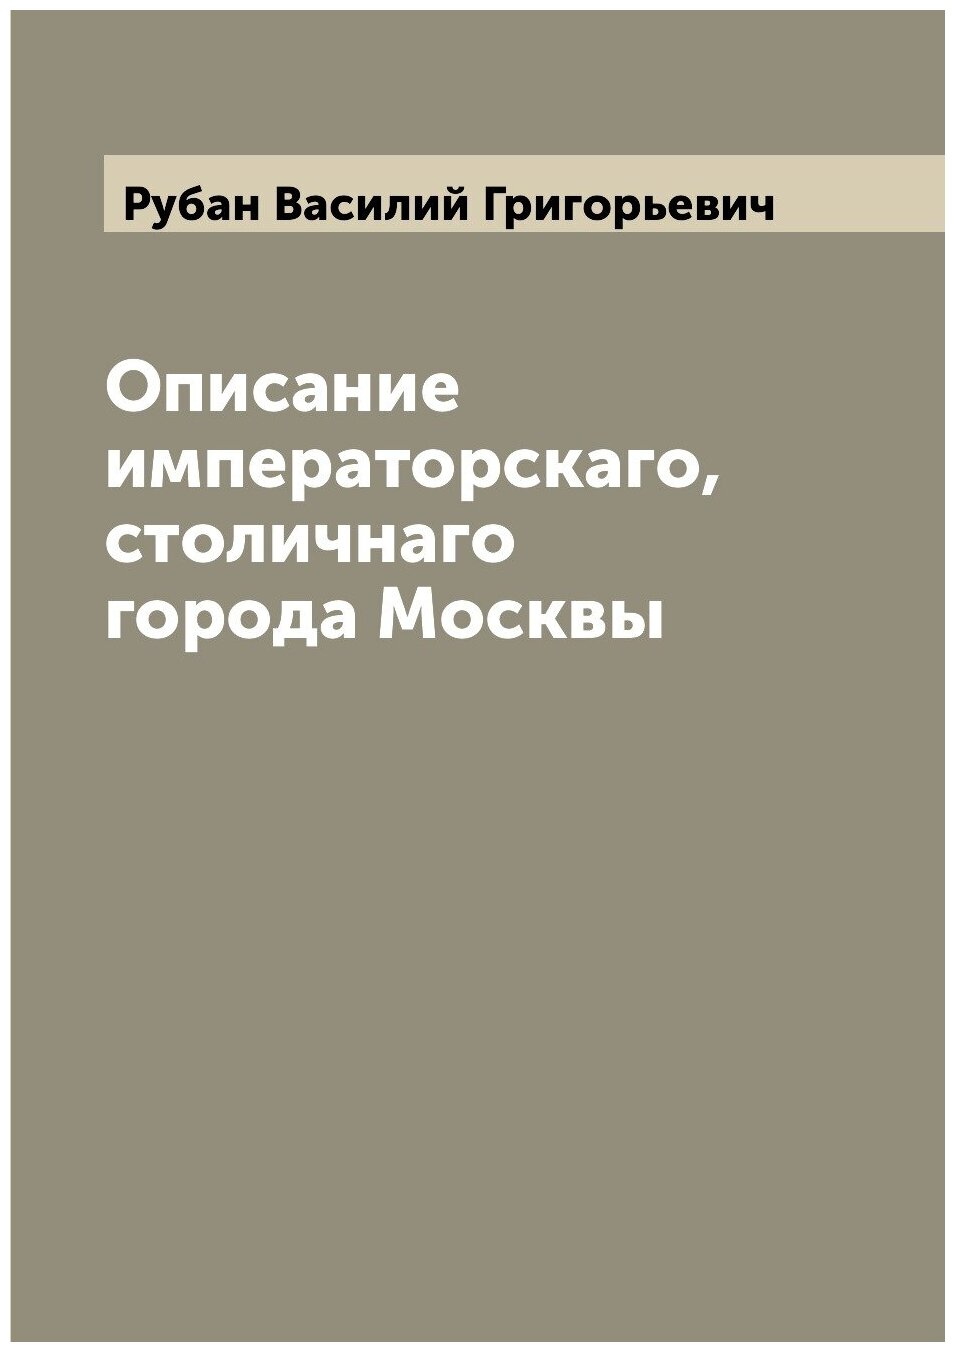 Описание императорскаго, столичнаго города Москвы